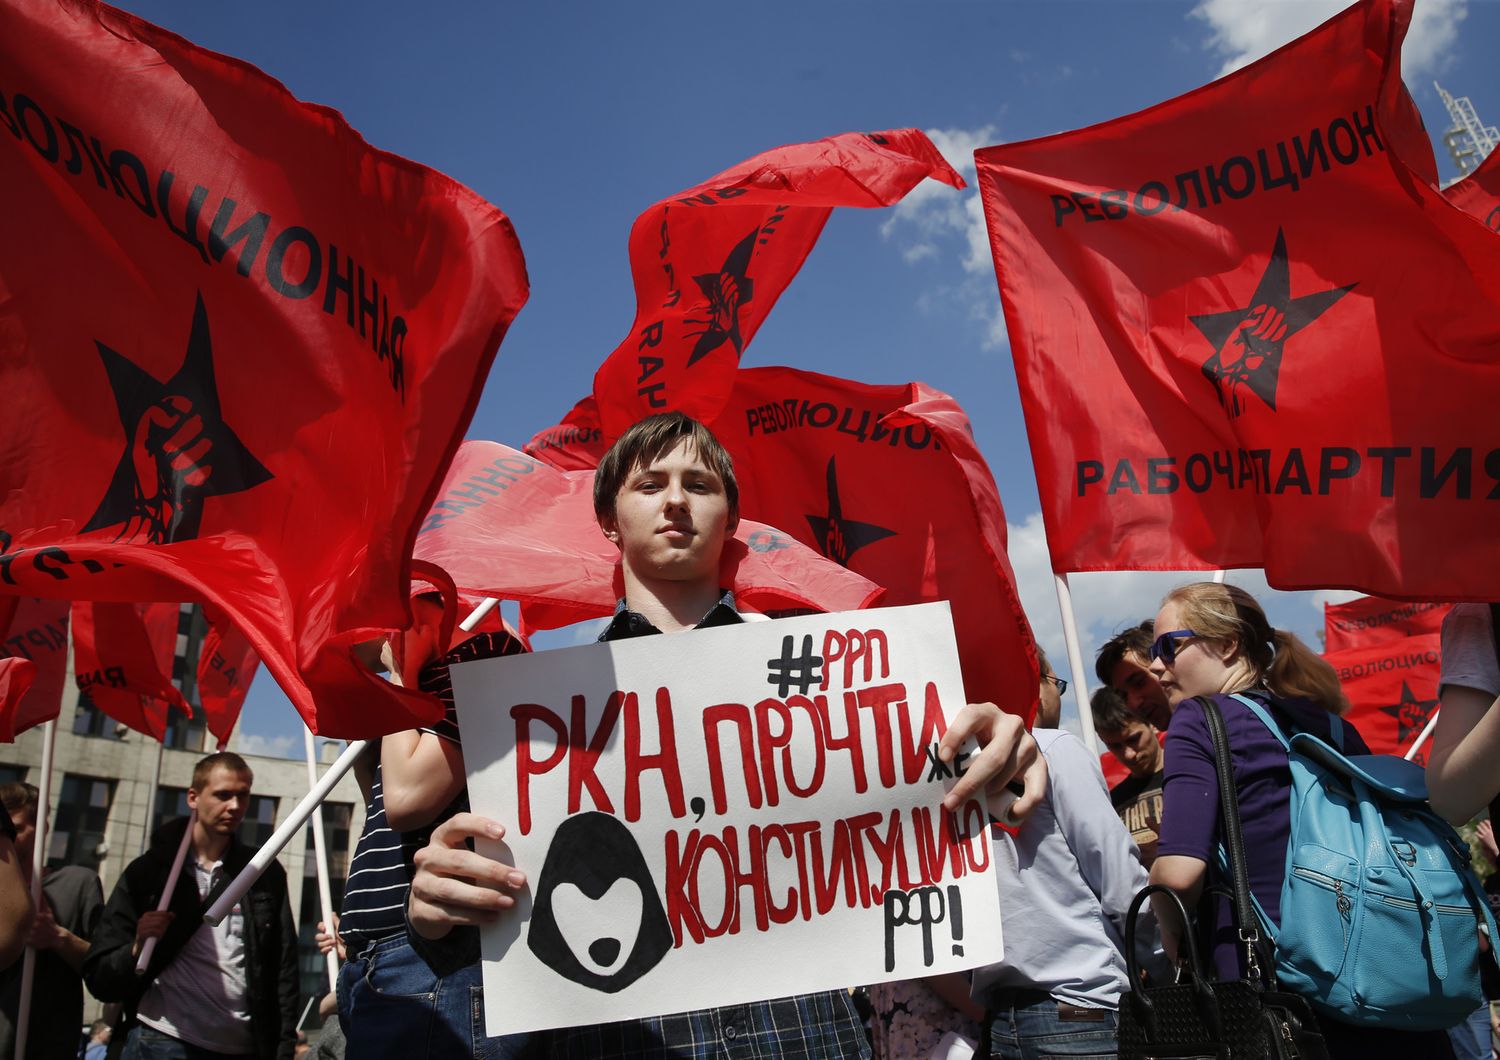 Una manifestazione contro la censura su Internet in Russia